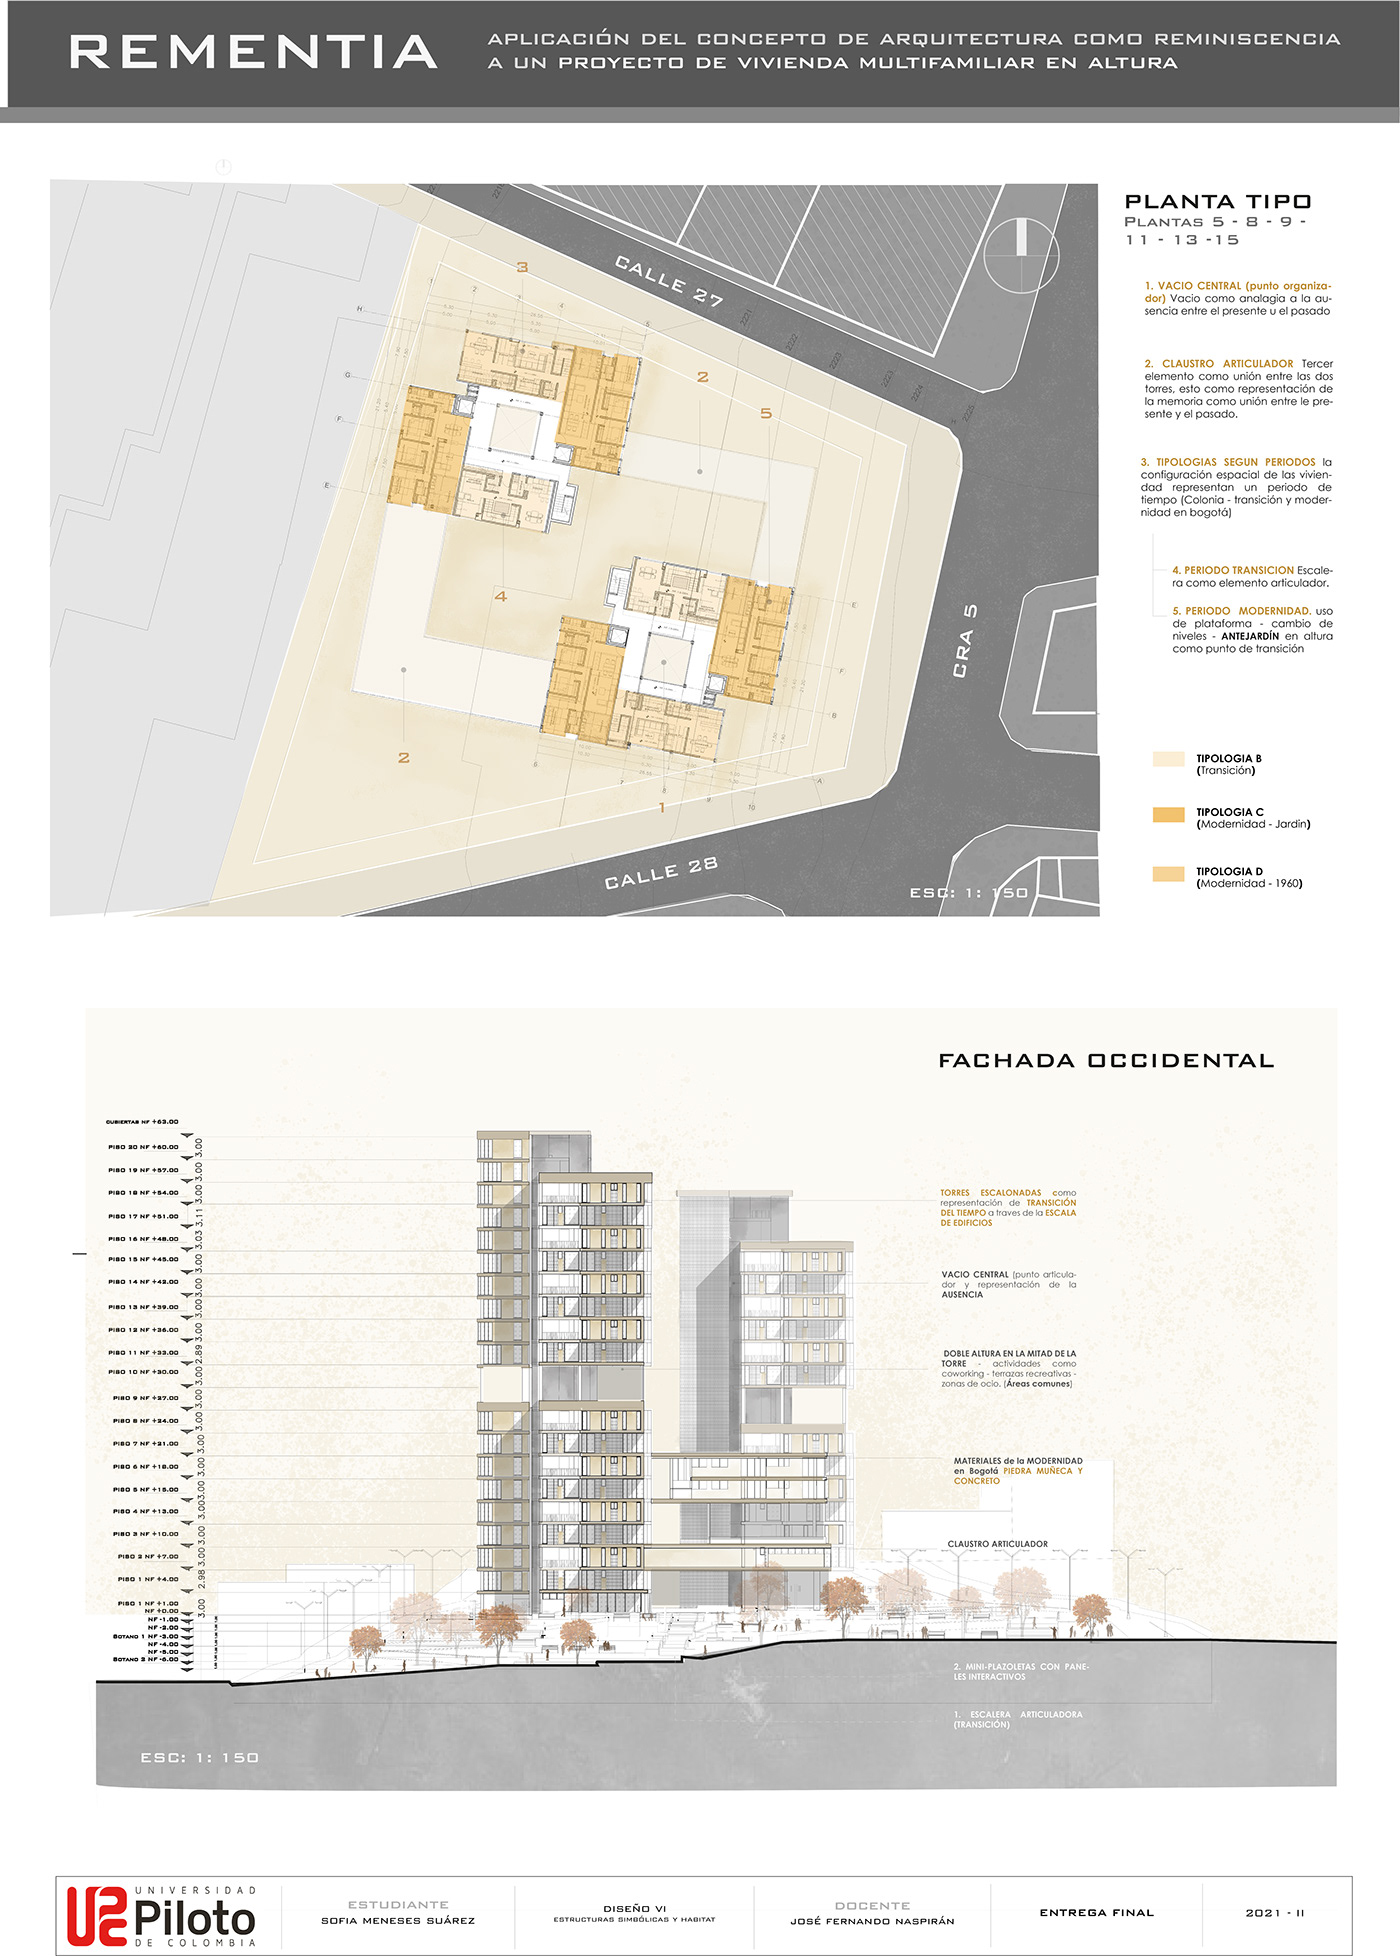 arquitectura diseño ilustracion proyecto reminiscencia vivienda architecture chapinero panel Urban